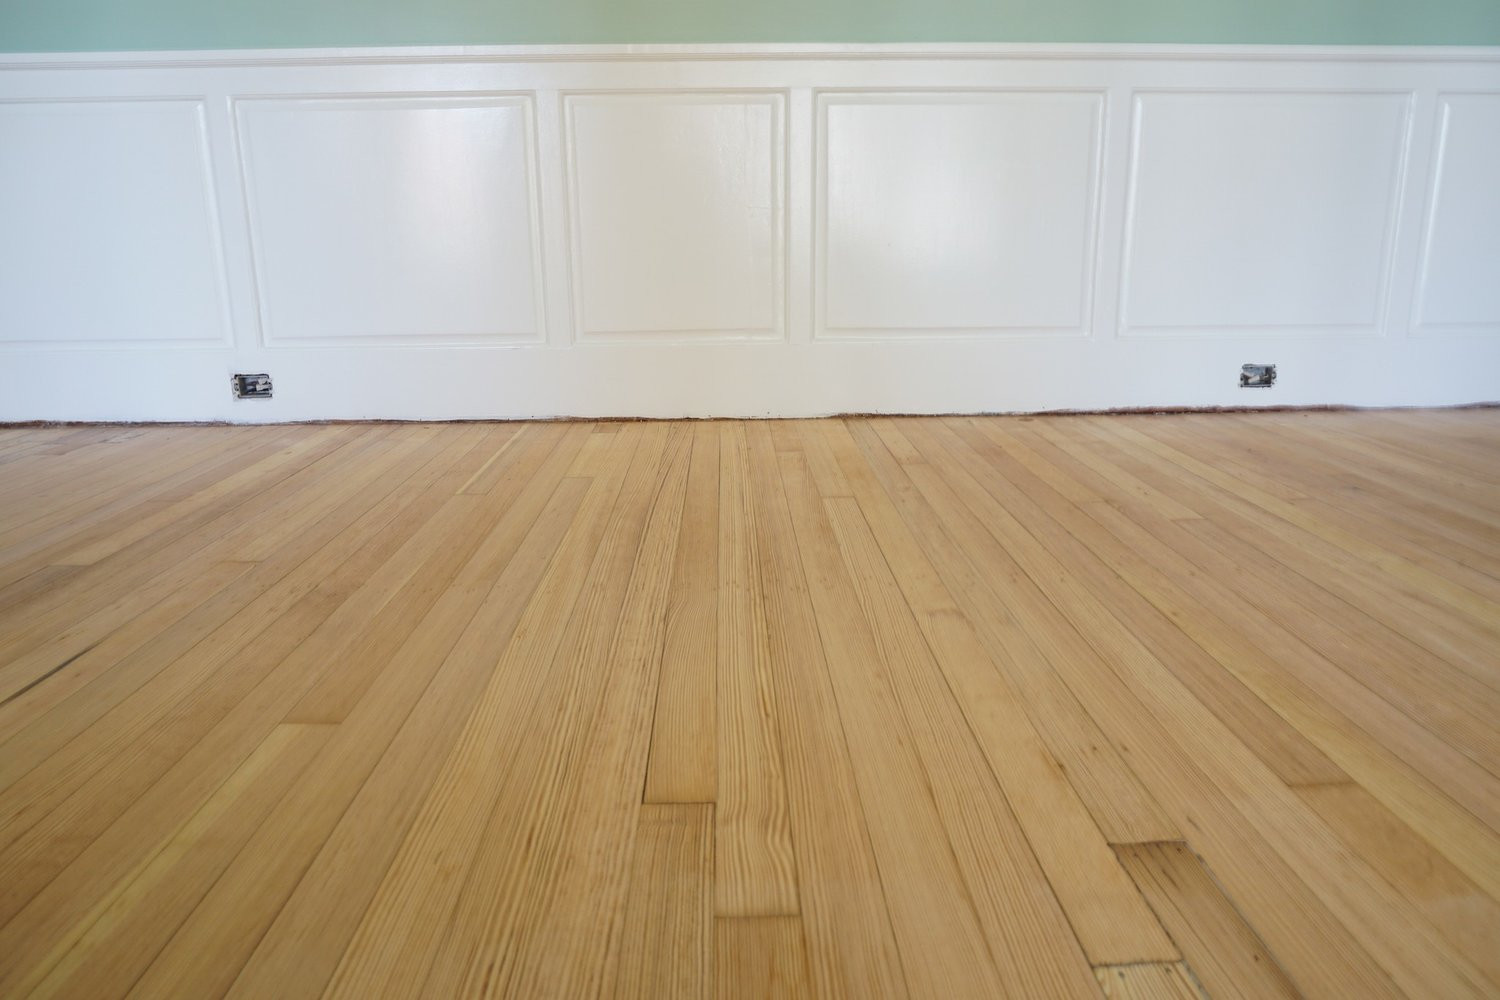 16 Great Hardwood Floor Repair Companies 2024 free download hardwood floor repair companies of vintage wood flooring in 21762323 1782210015140170 3063787433146908073 o